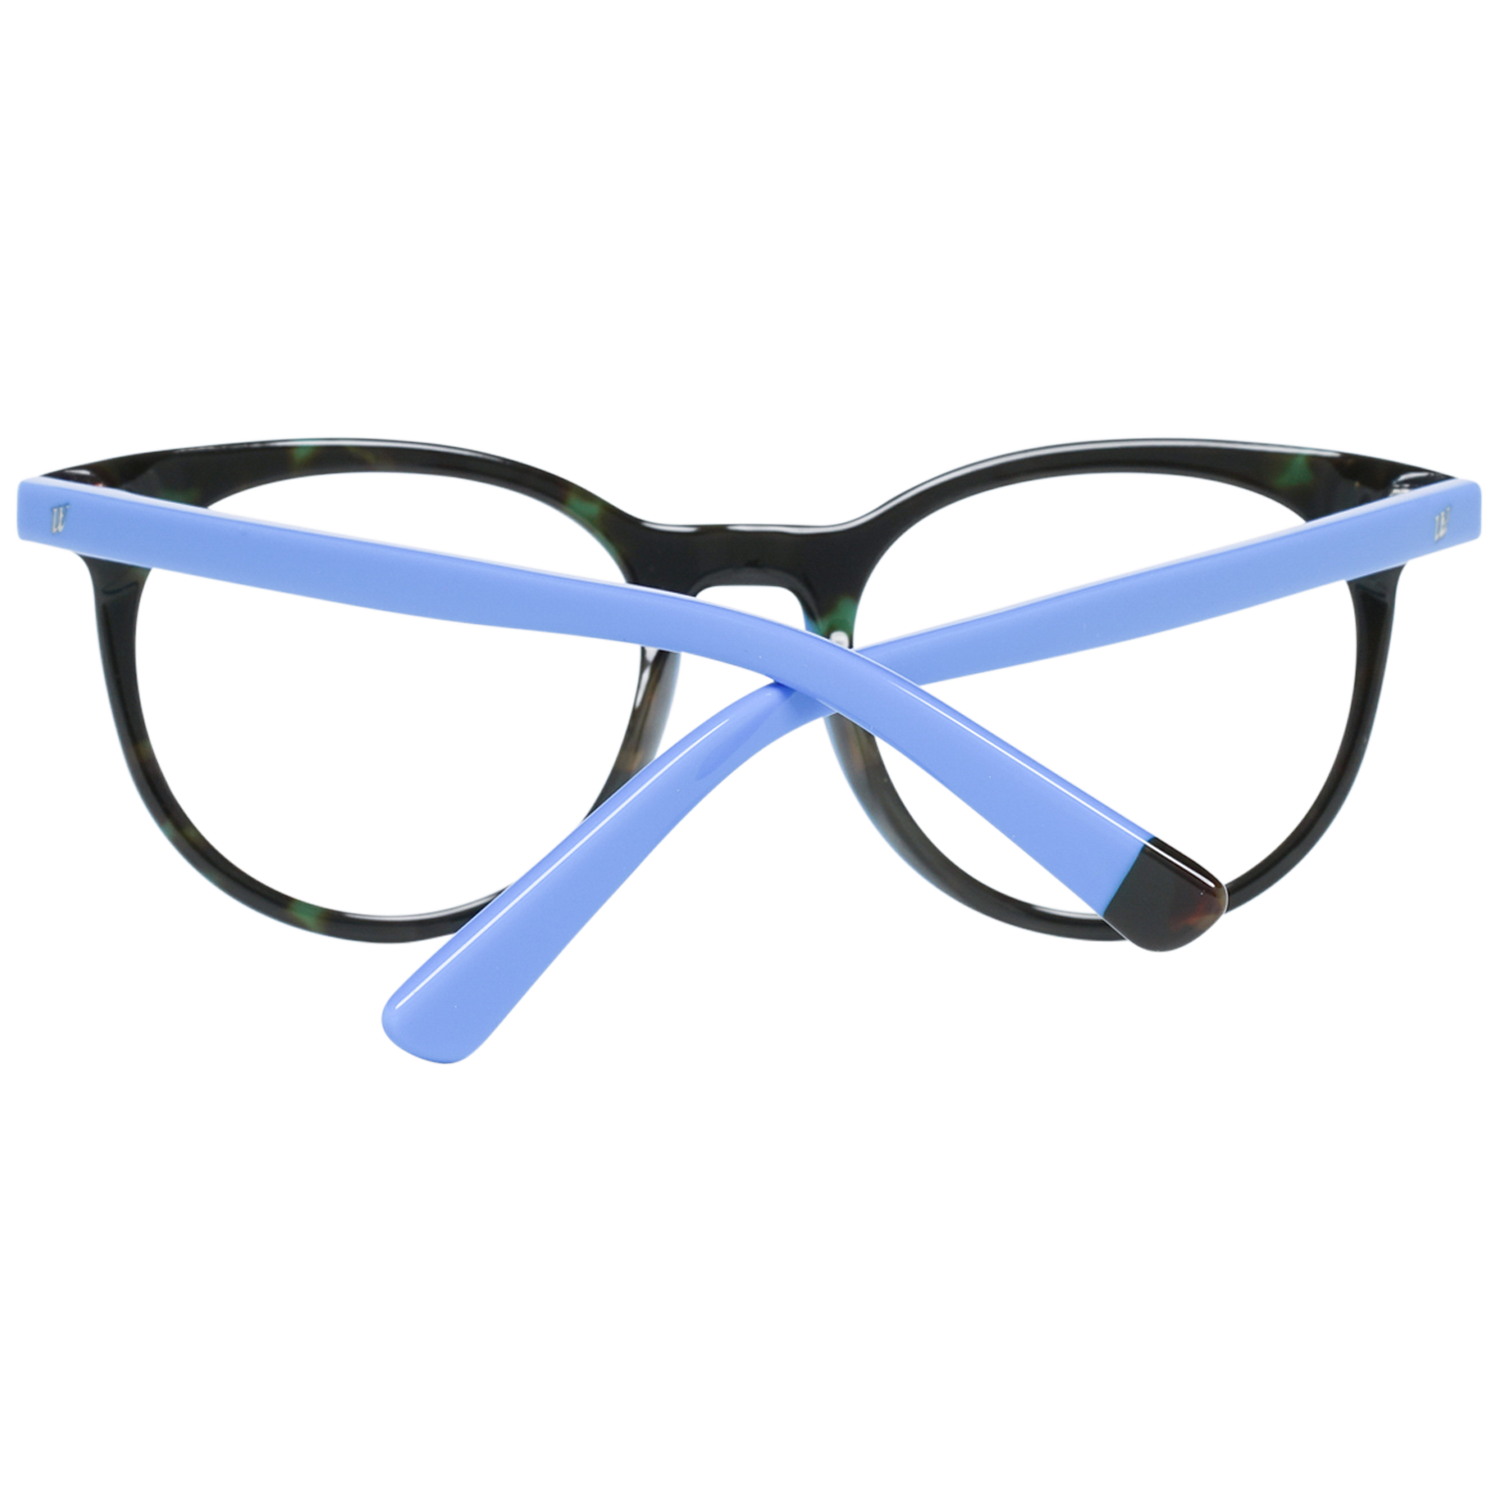 Web Frames Web Optical Frame WE5251 056 49 Eyeglasses Eyewear UK USA Australia 